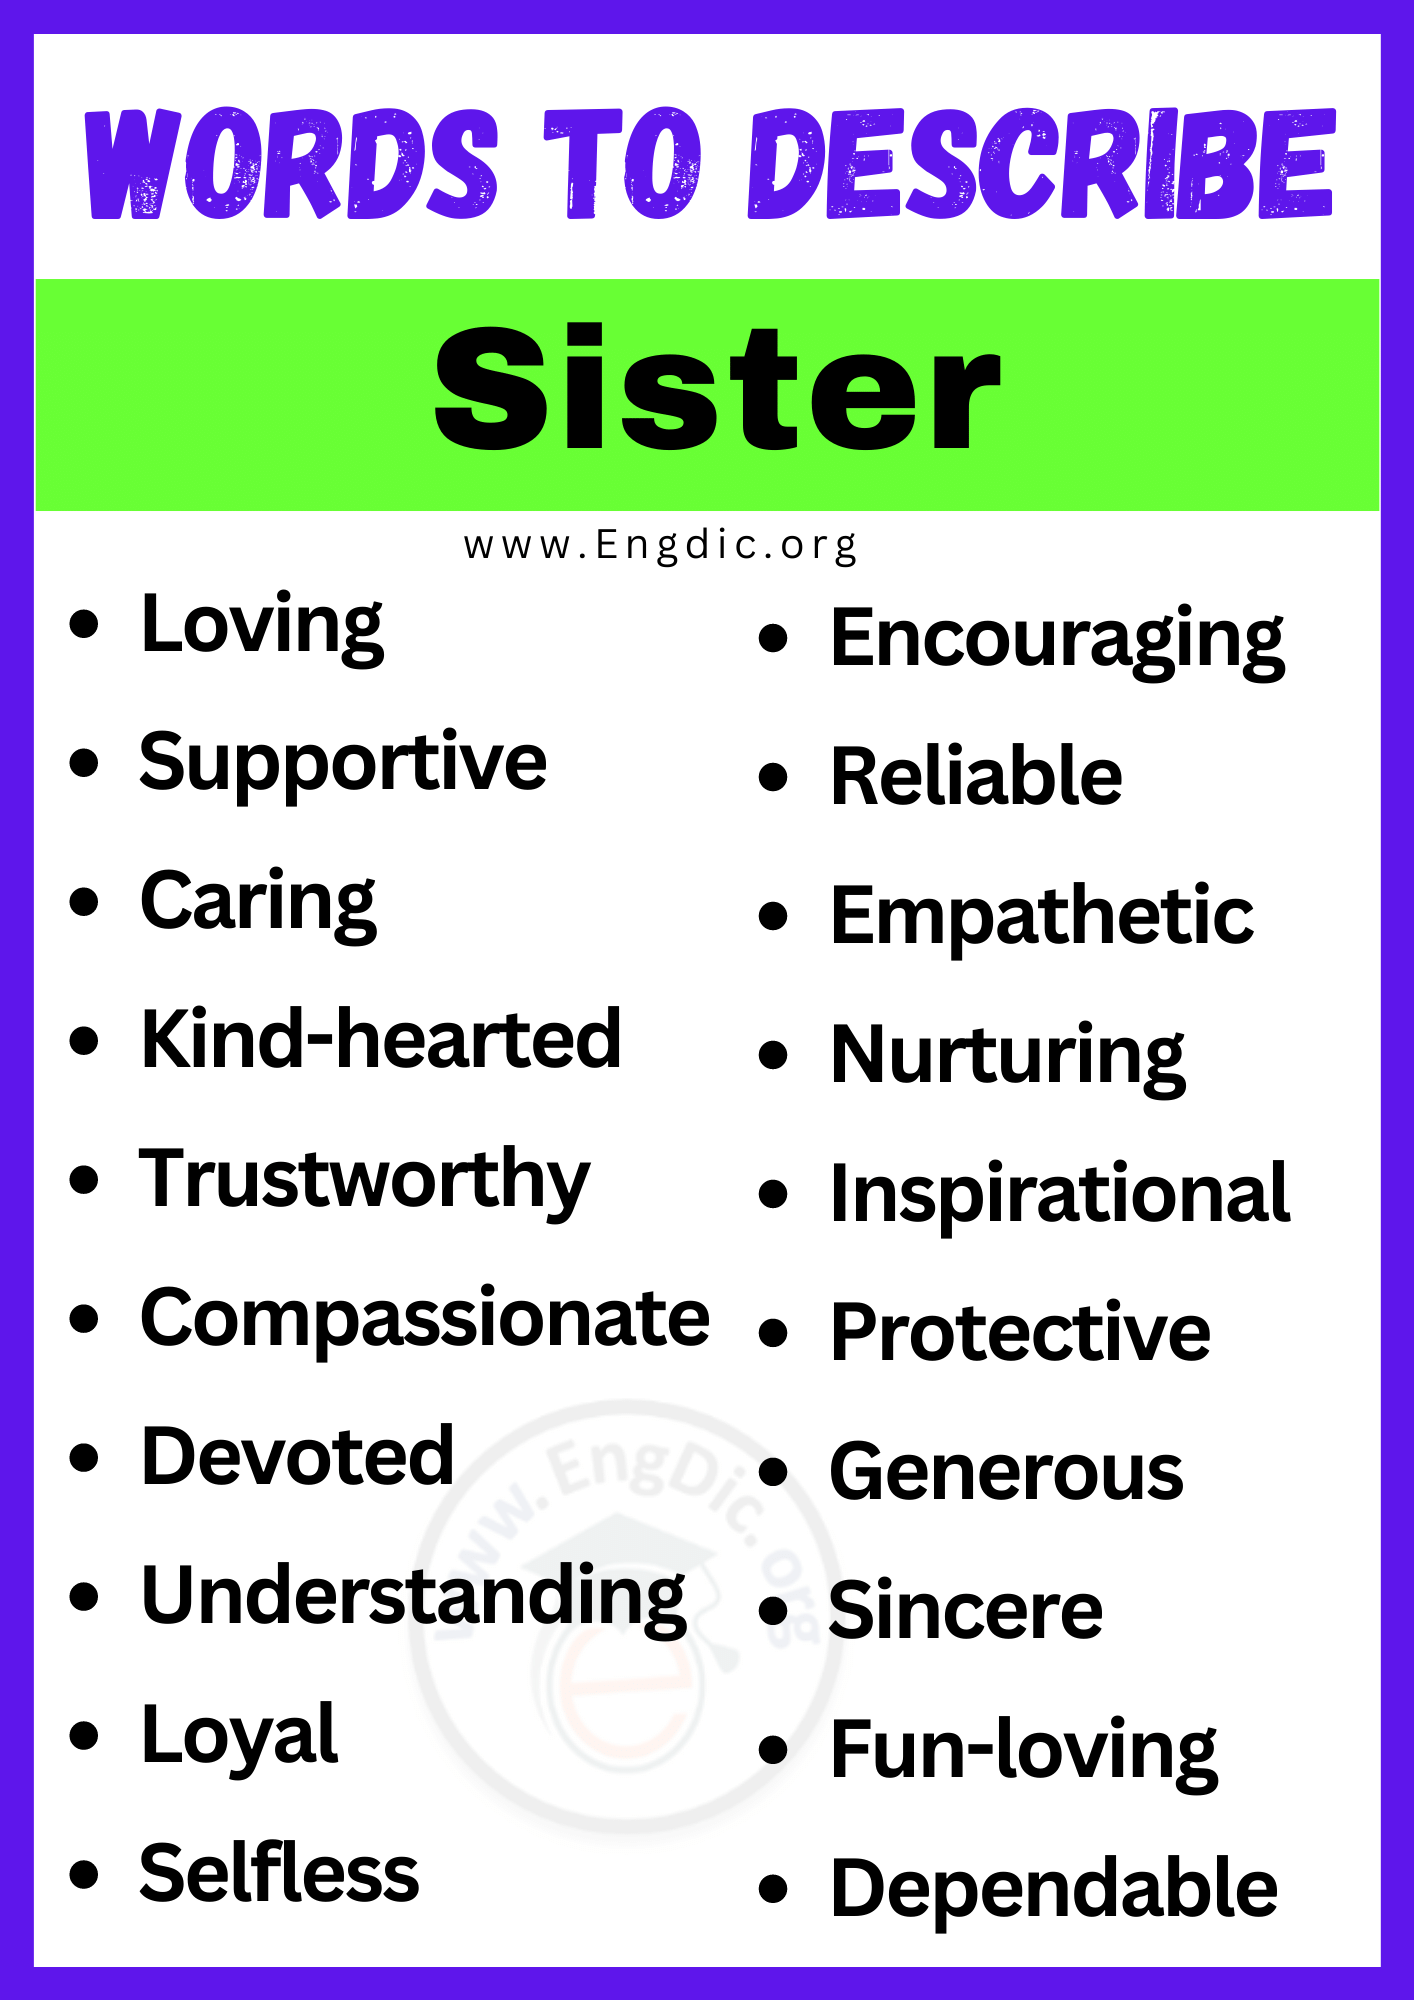 Words to Describe a Sister